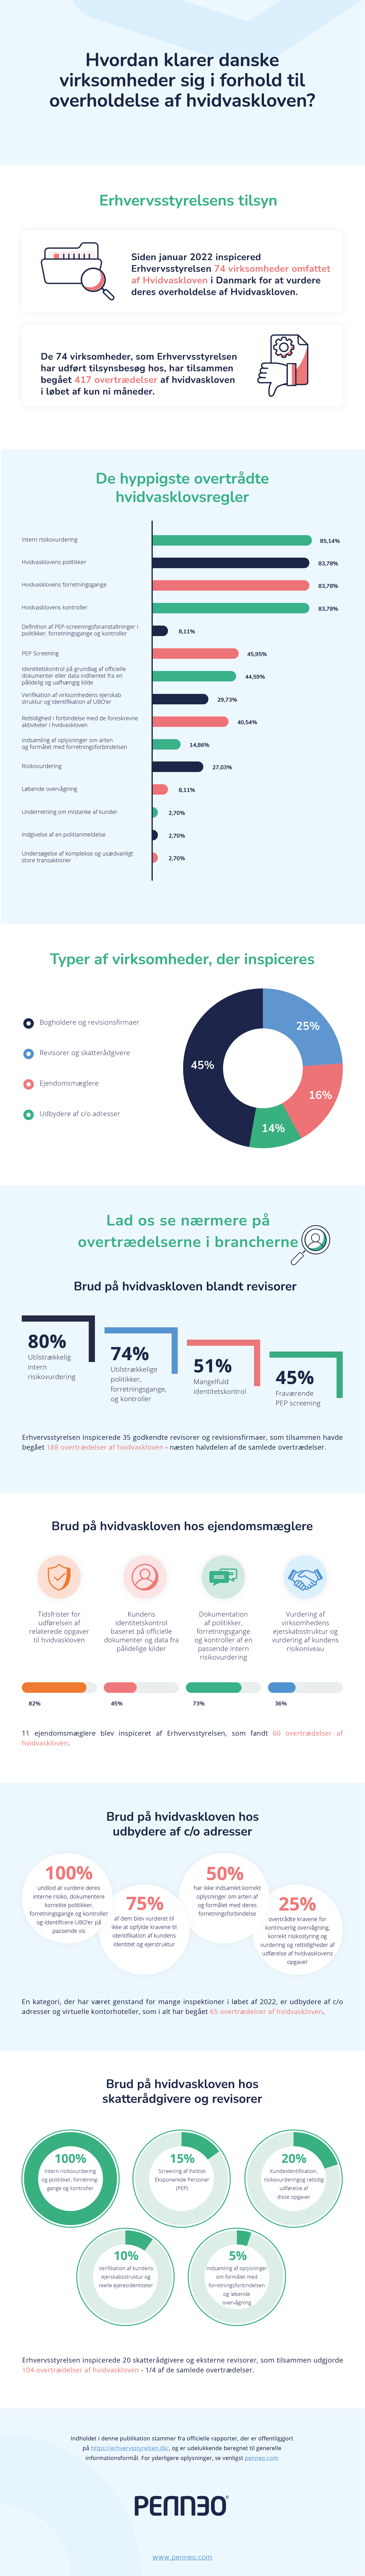 Infografik: Manglende overholdelse af hvidvaskloven i danske virksomheder